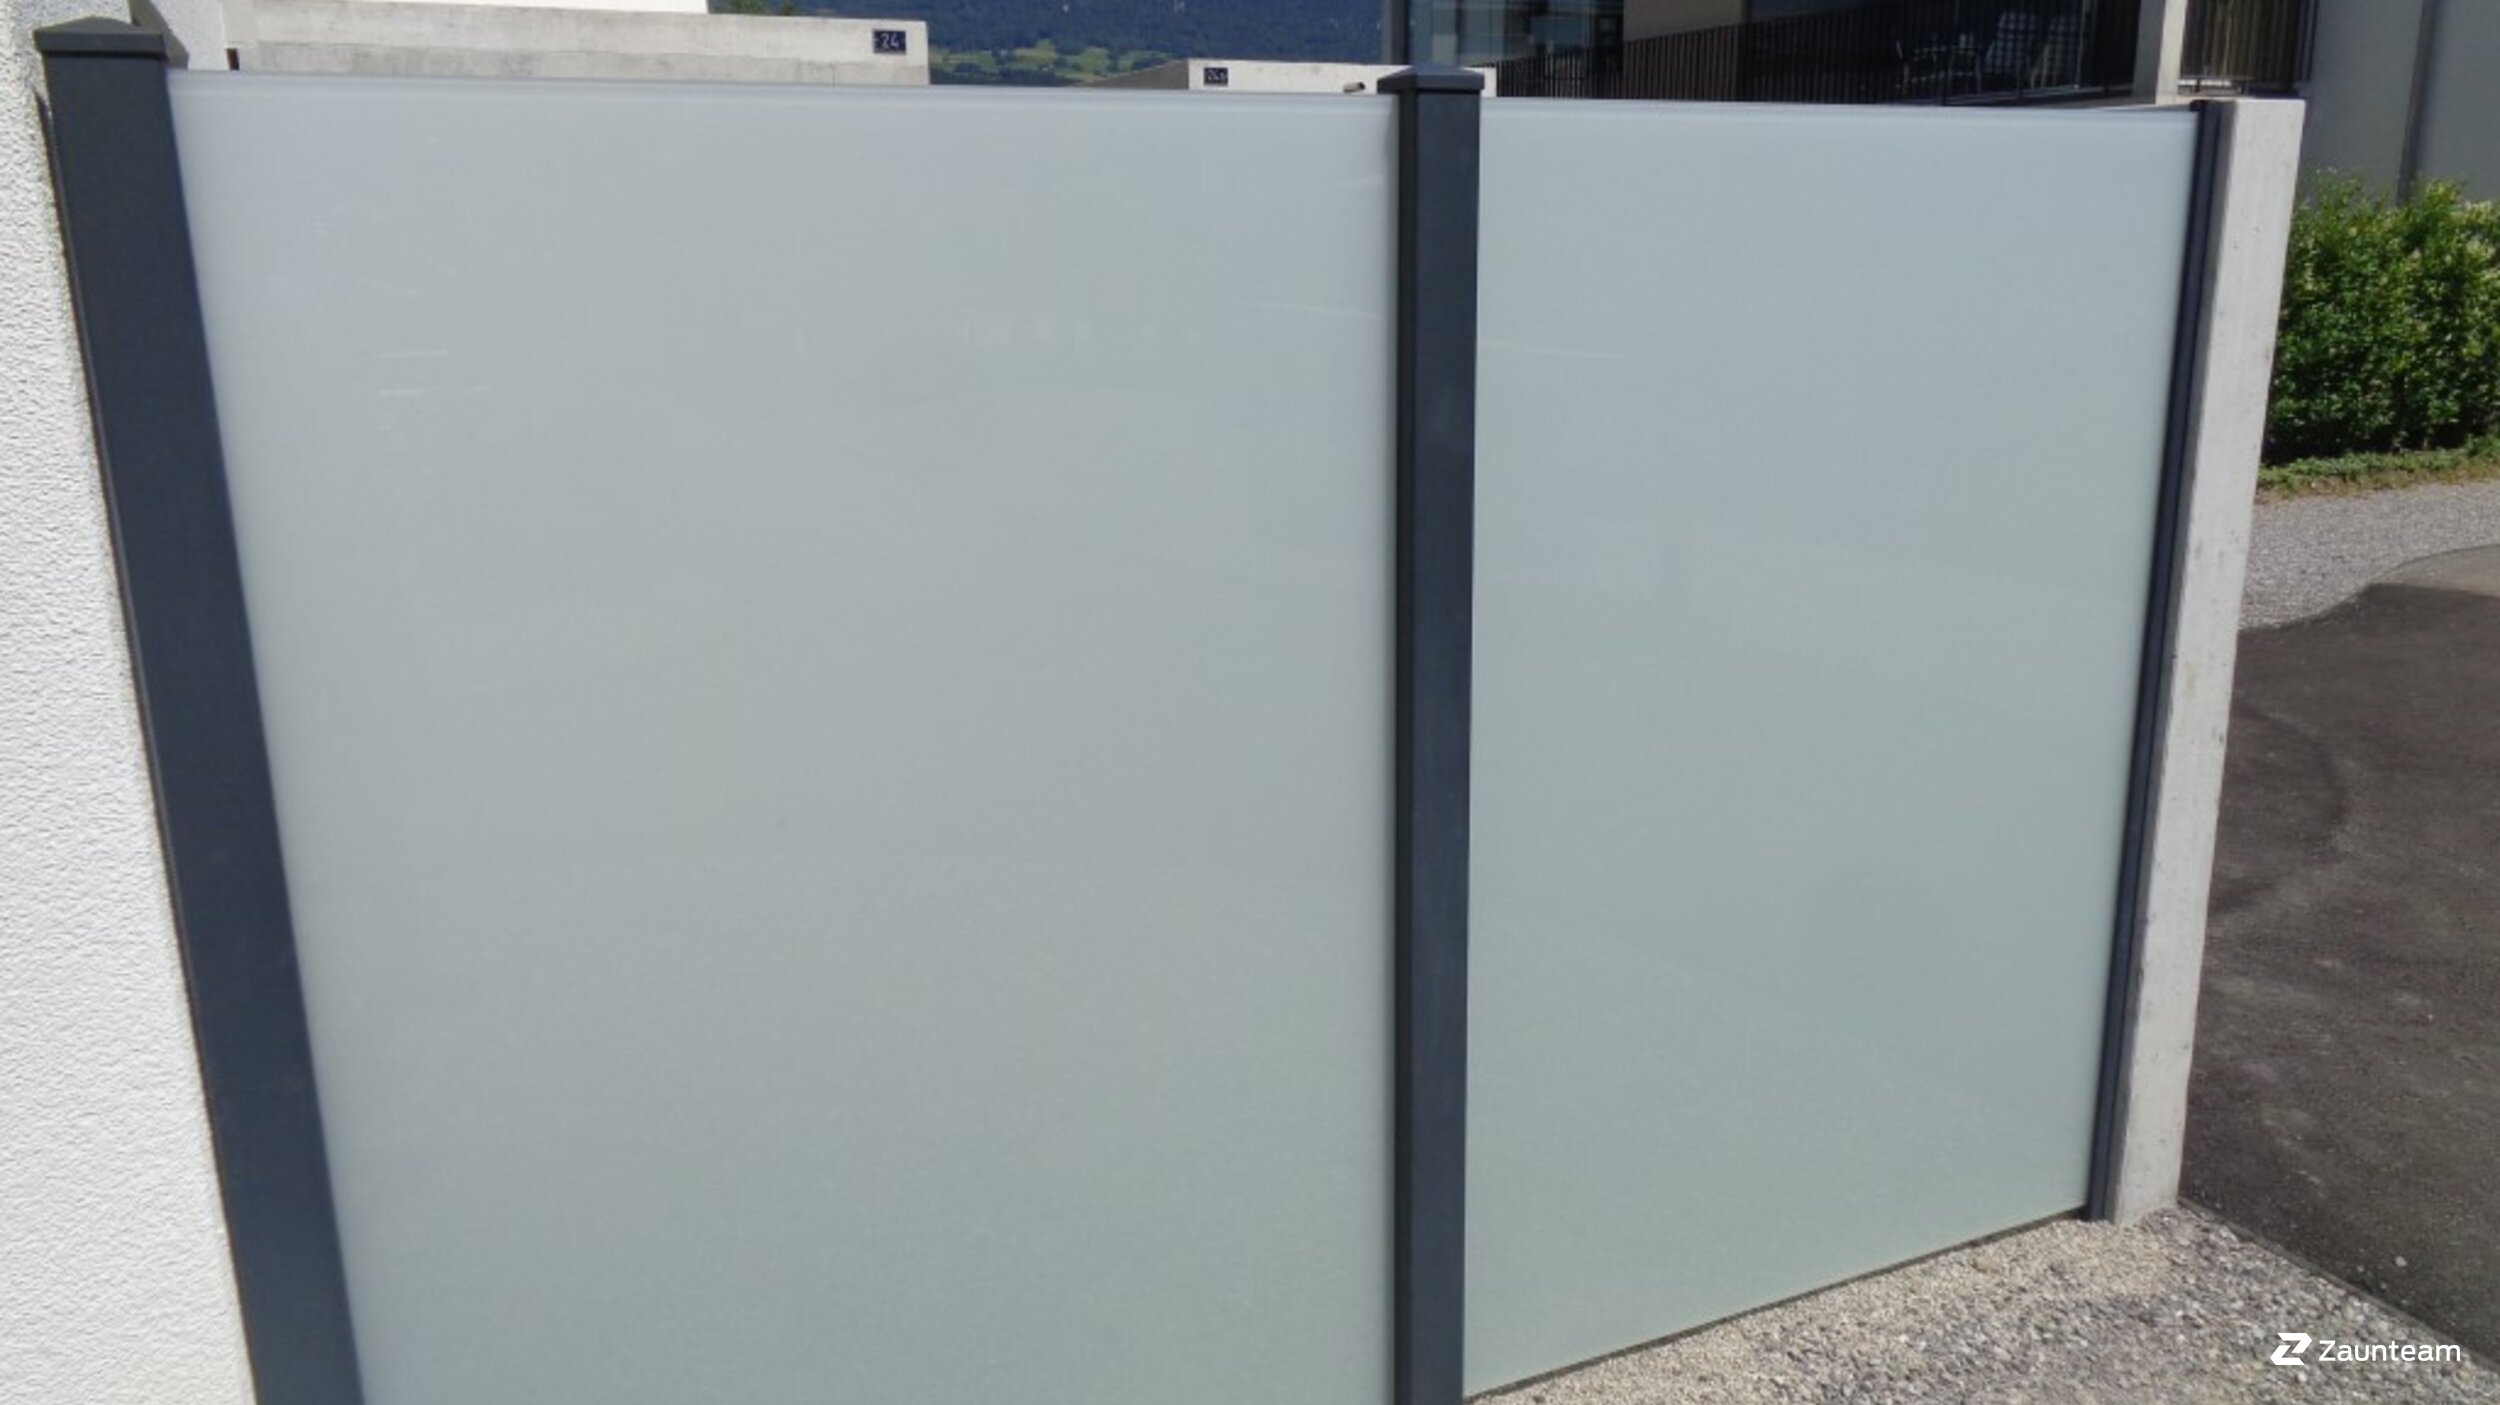 Protection brise-vue vitrée de 2018 à 3380 Wangen aAare Suisse de Zaunteam Mittelland GmbH.